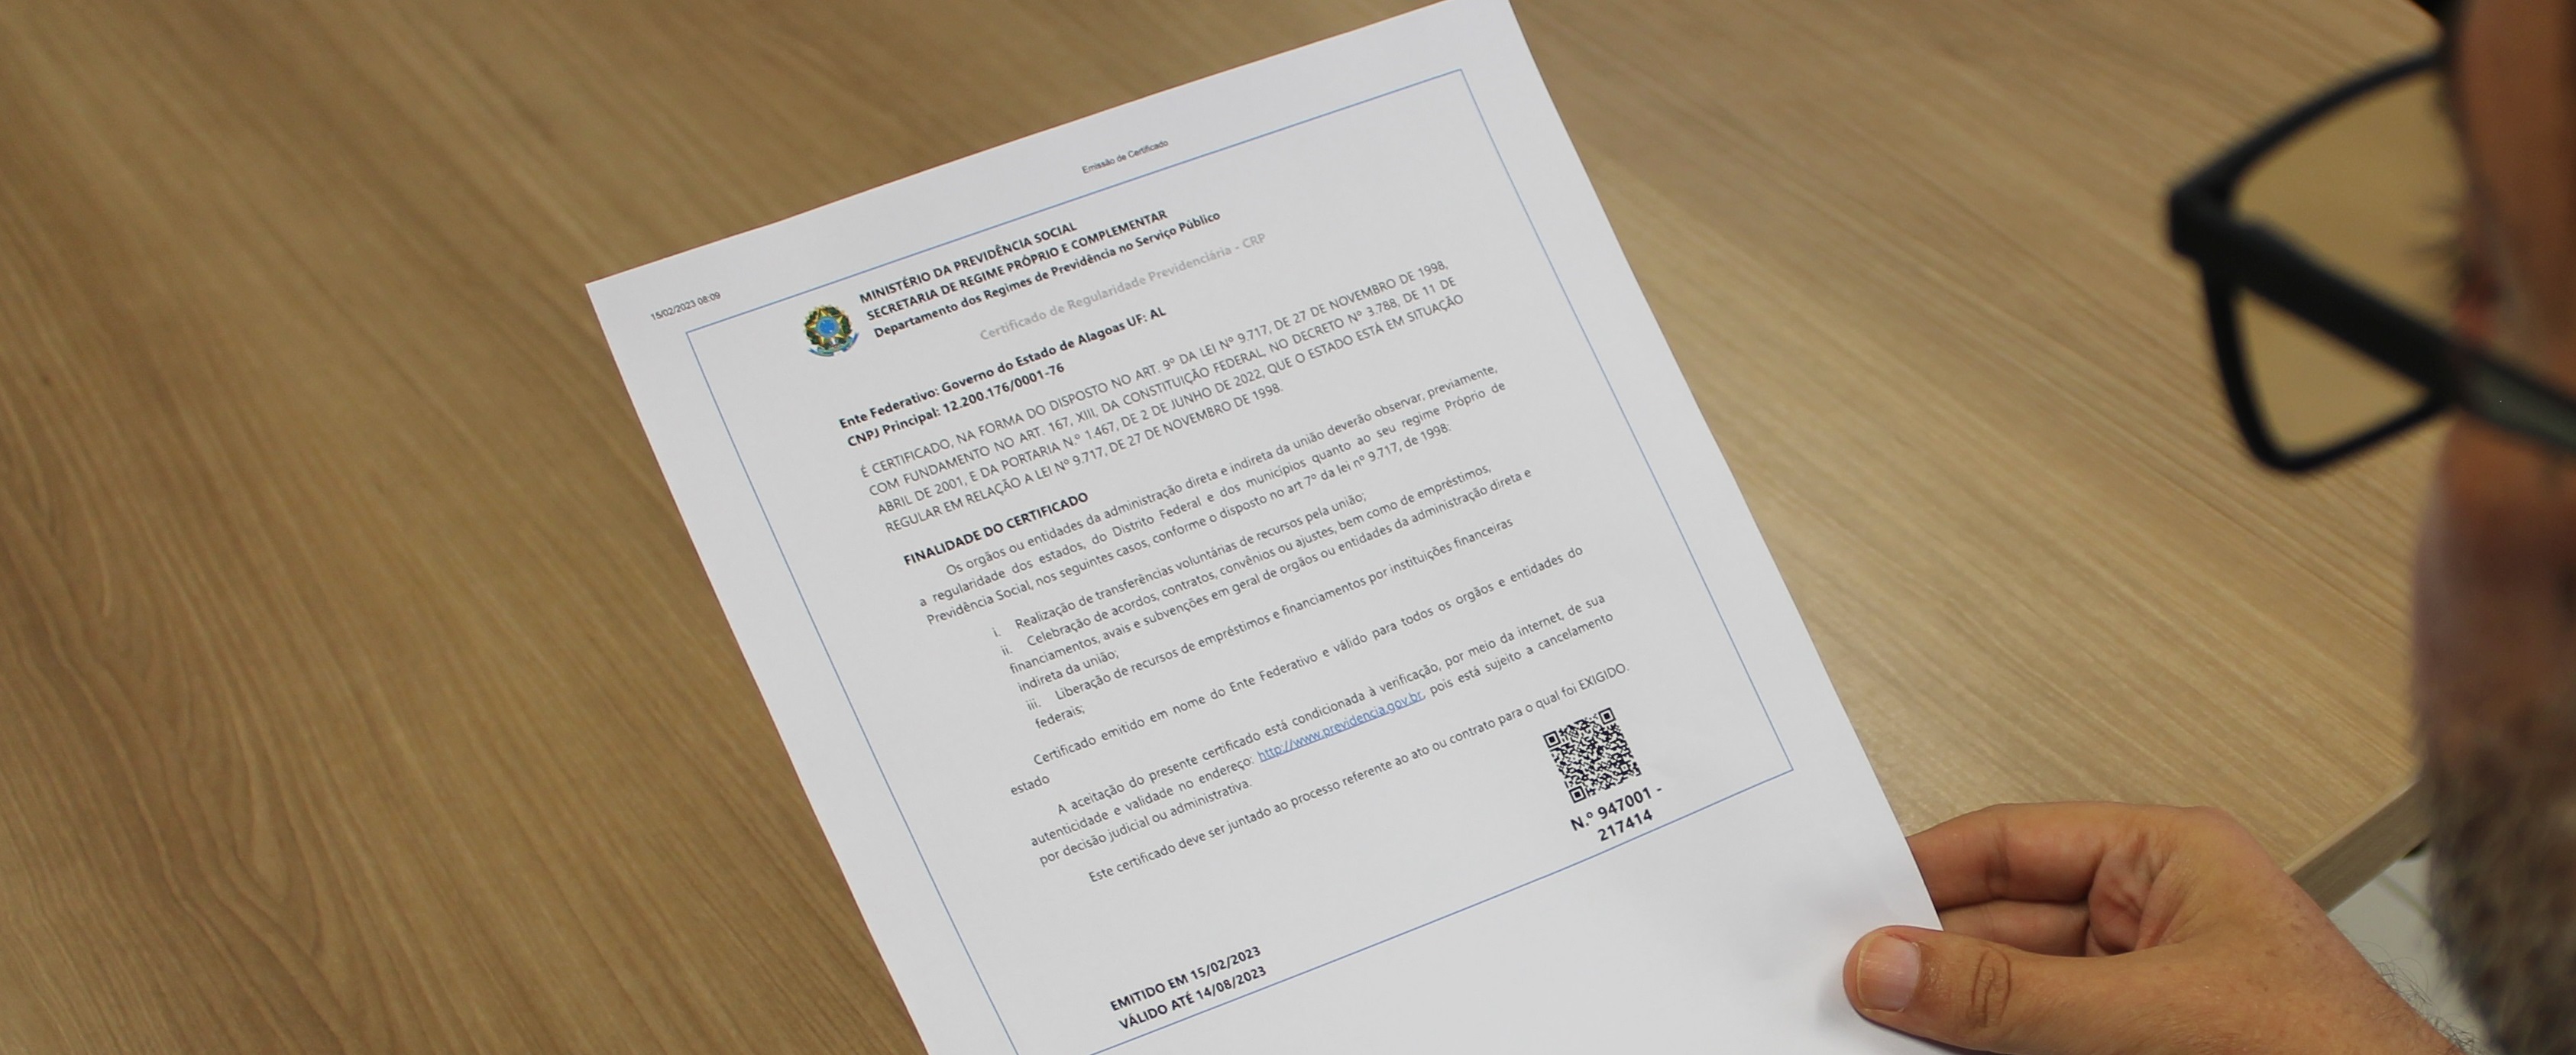 A Alagoas Previdência renova certificação fornecida pelo Ministério da Economia, com validade até agosto de 2023